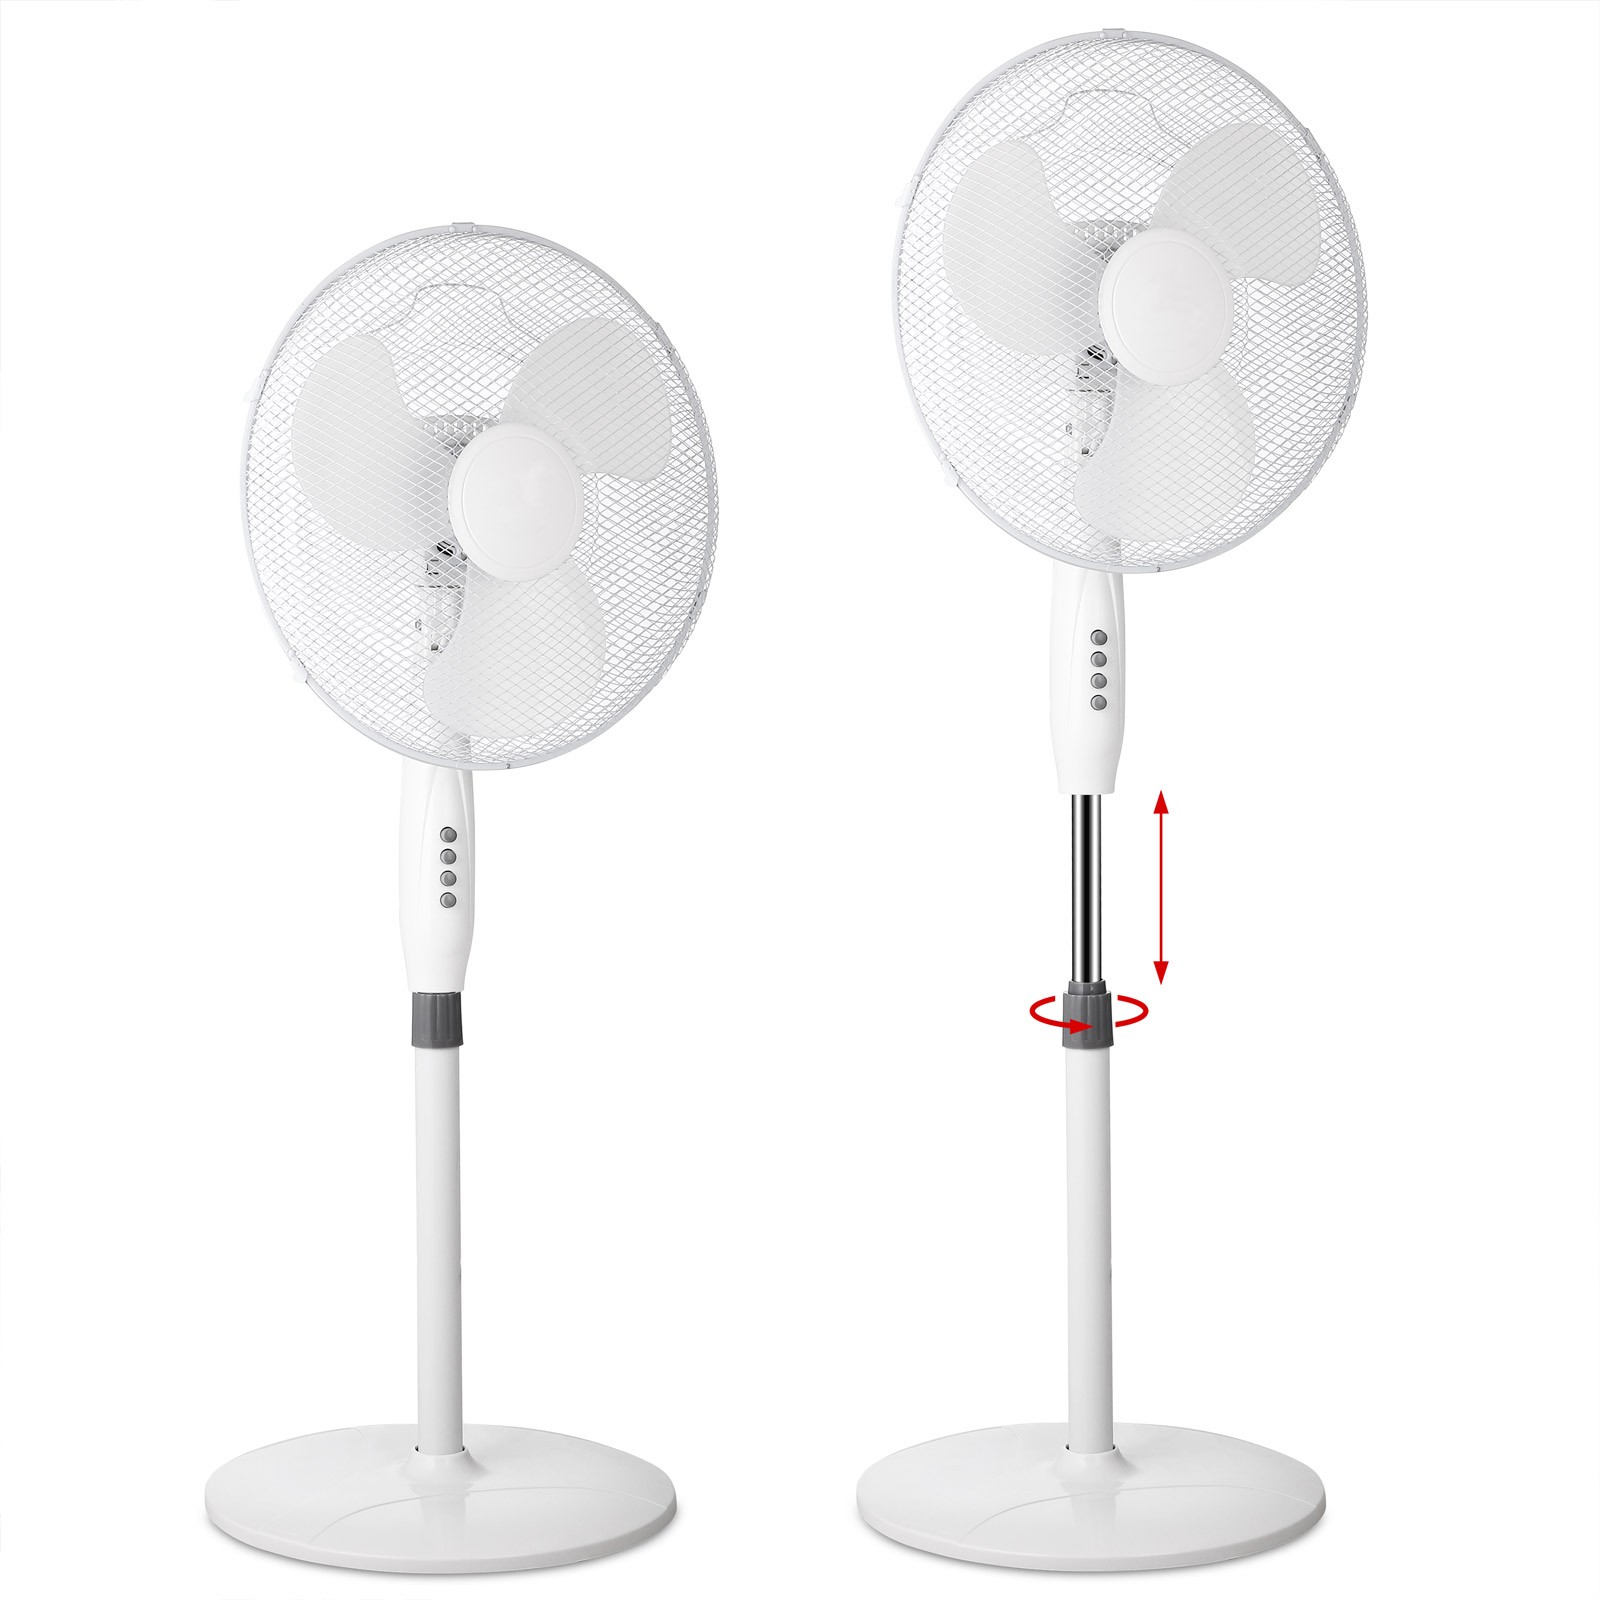 Ventilator de putere mare, Reglabil, Rotativ, 43 cm Climatizare